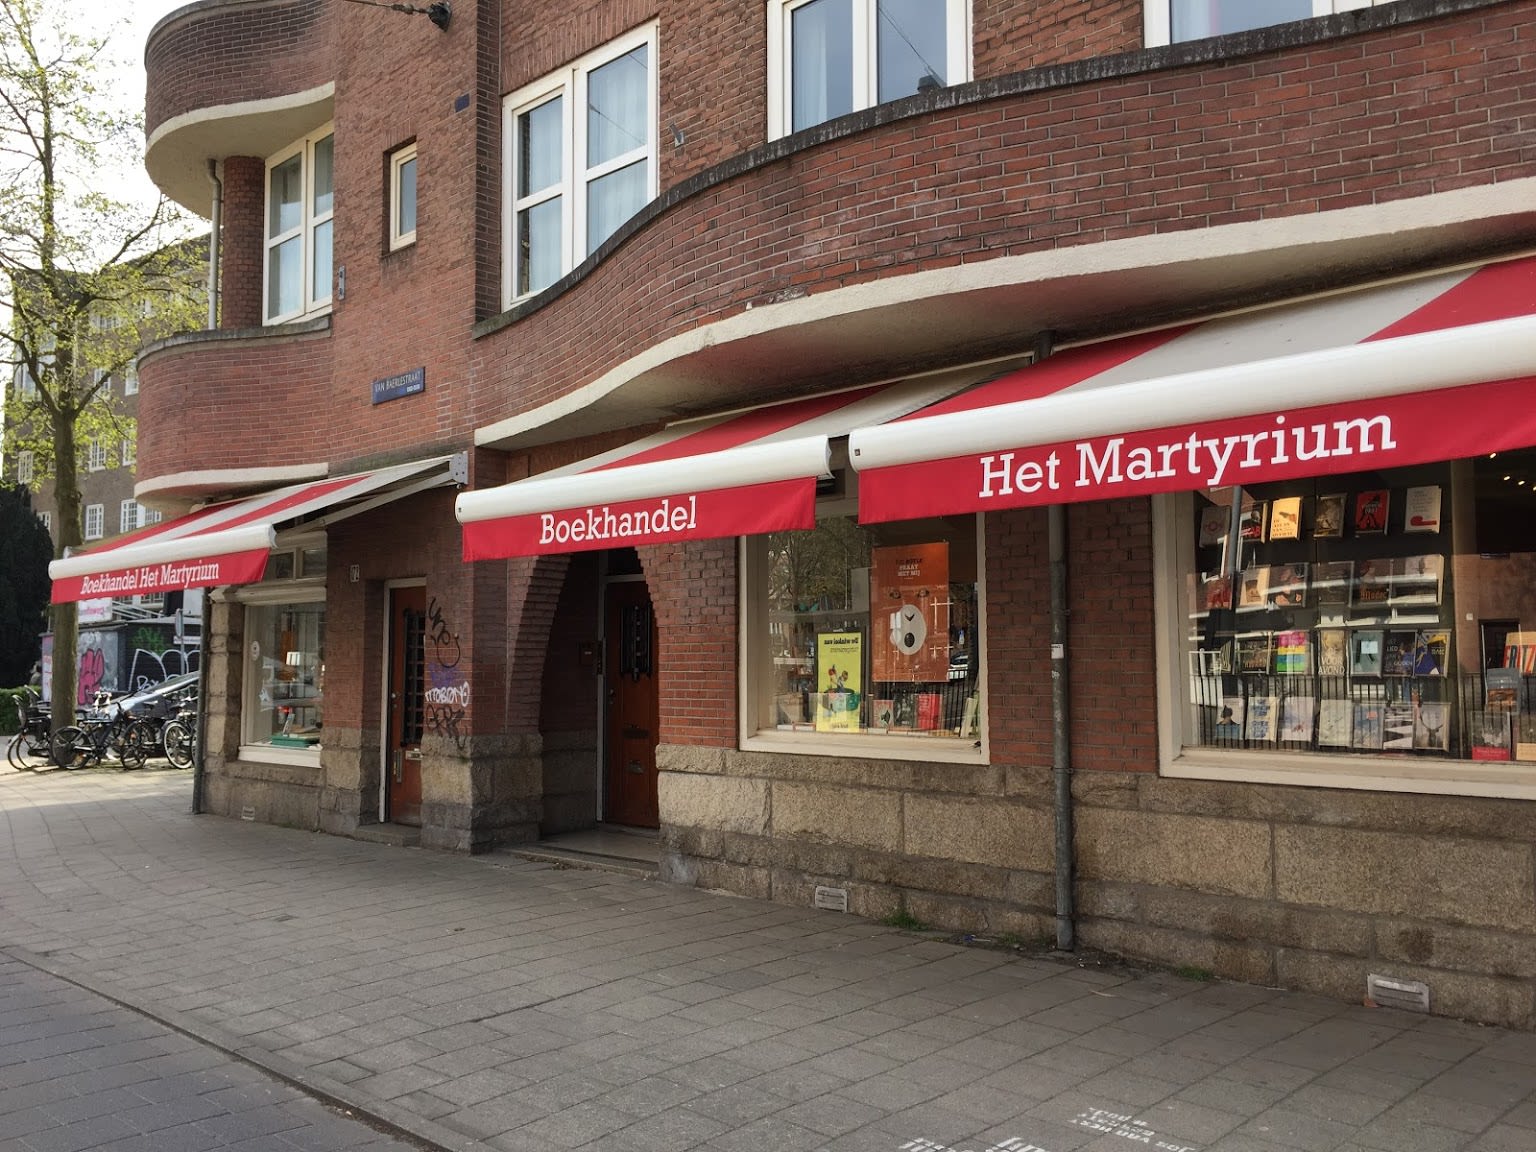 Bookstore Martyrium